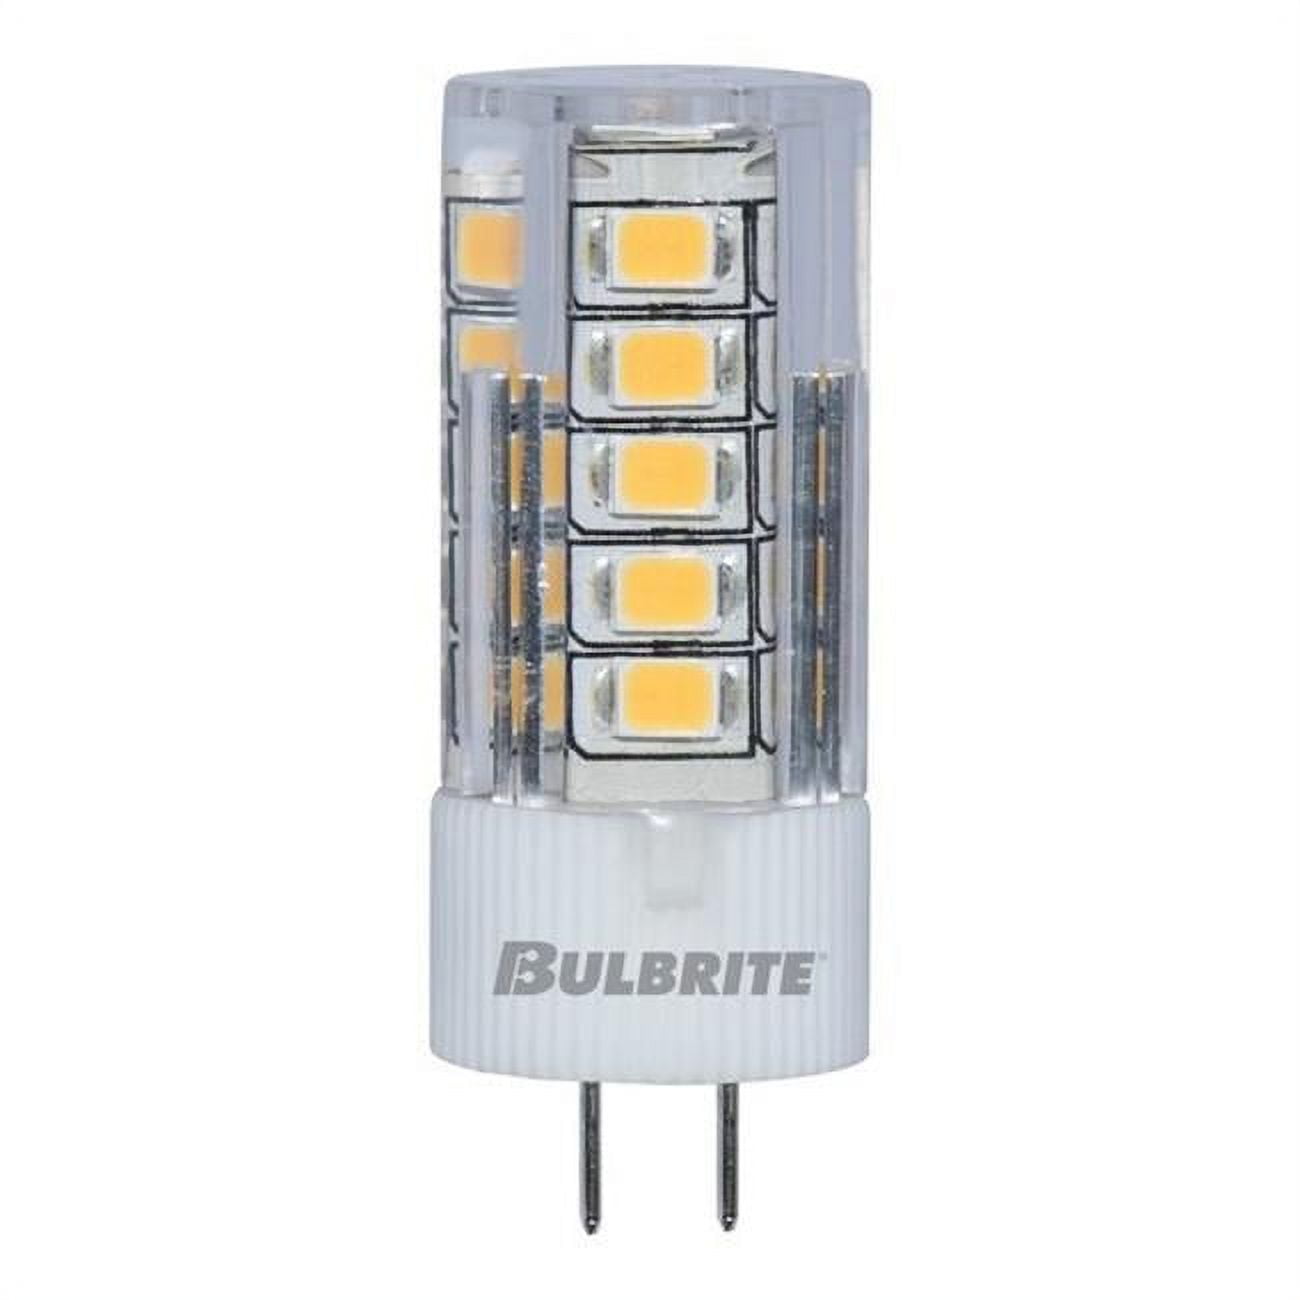 Picture of Bulbrite 861511 3 watt 12V Clear JC LED Mini Light Bulbs with Bi-Pin G4 Base, 3000K Soft White Light, 280 Lumens - Pack of 3